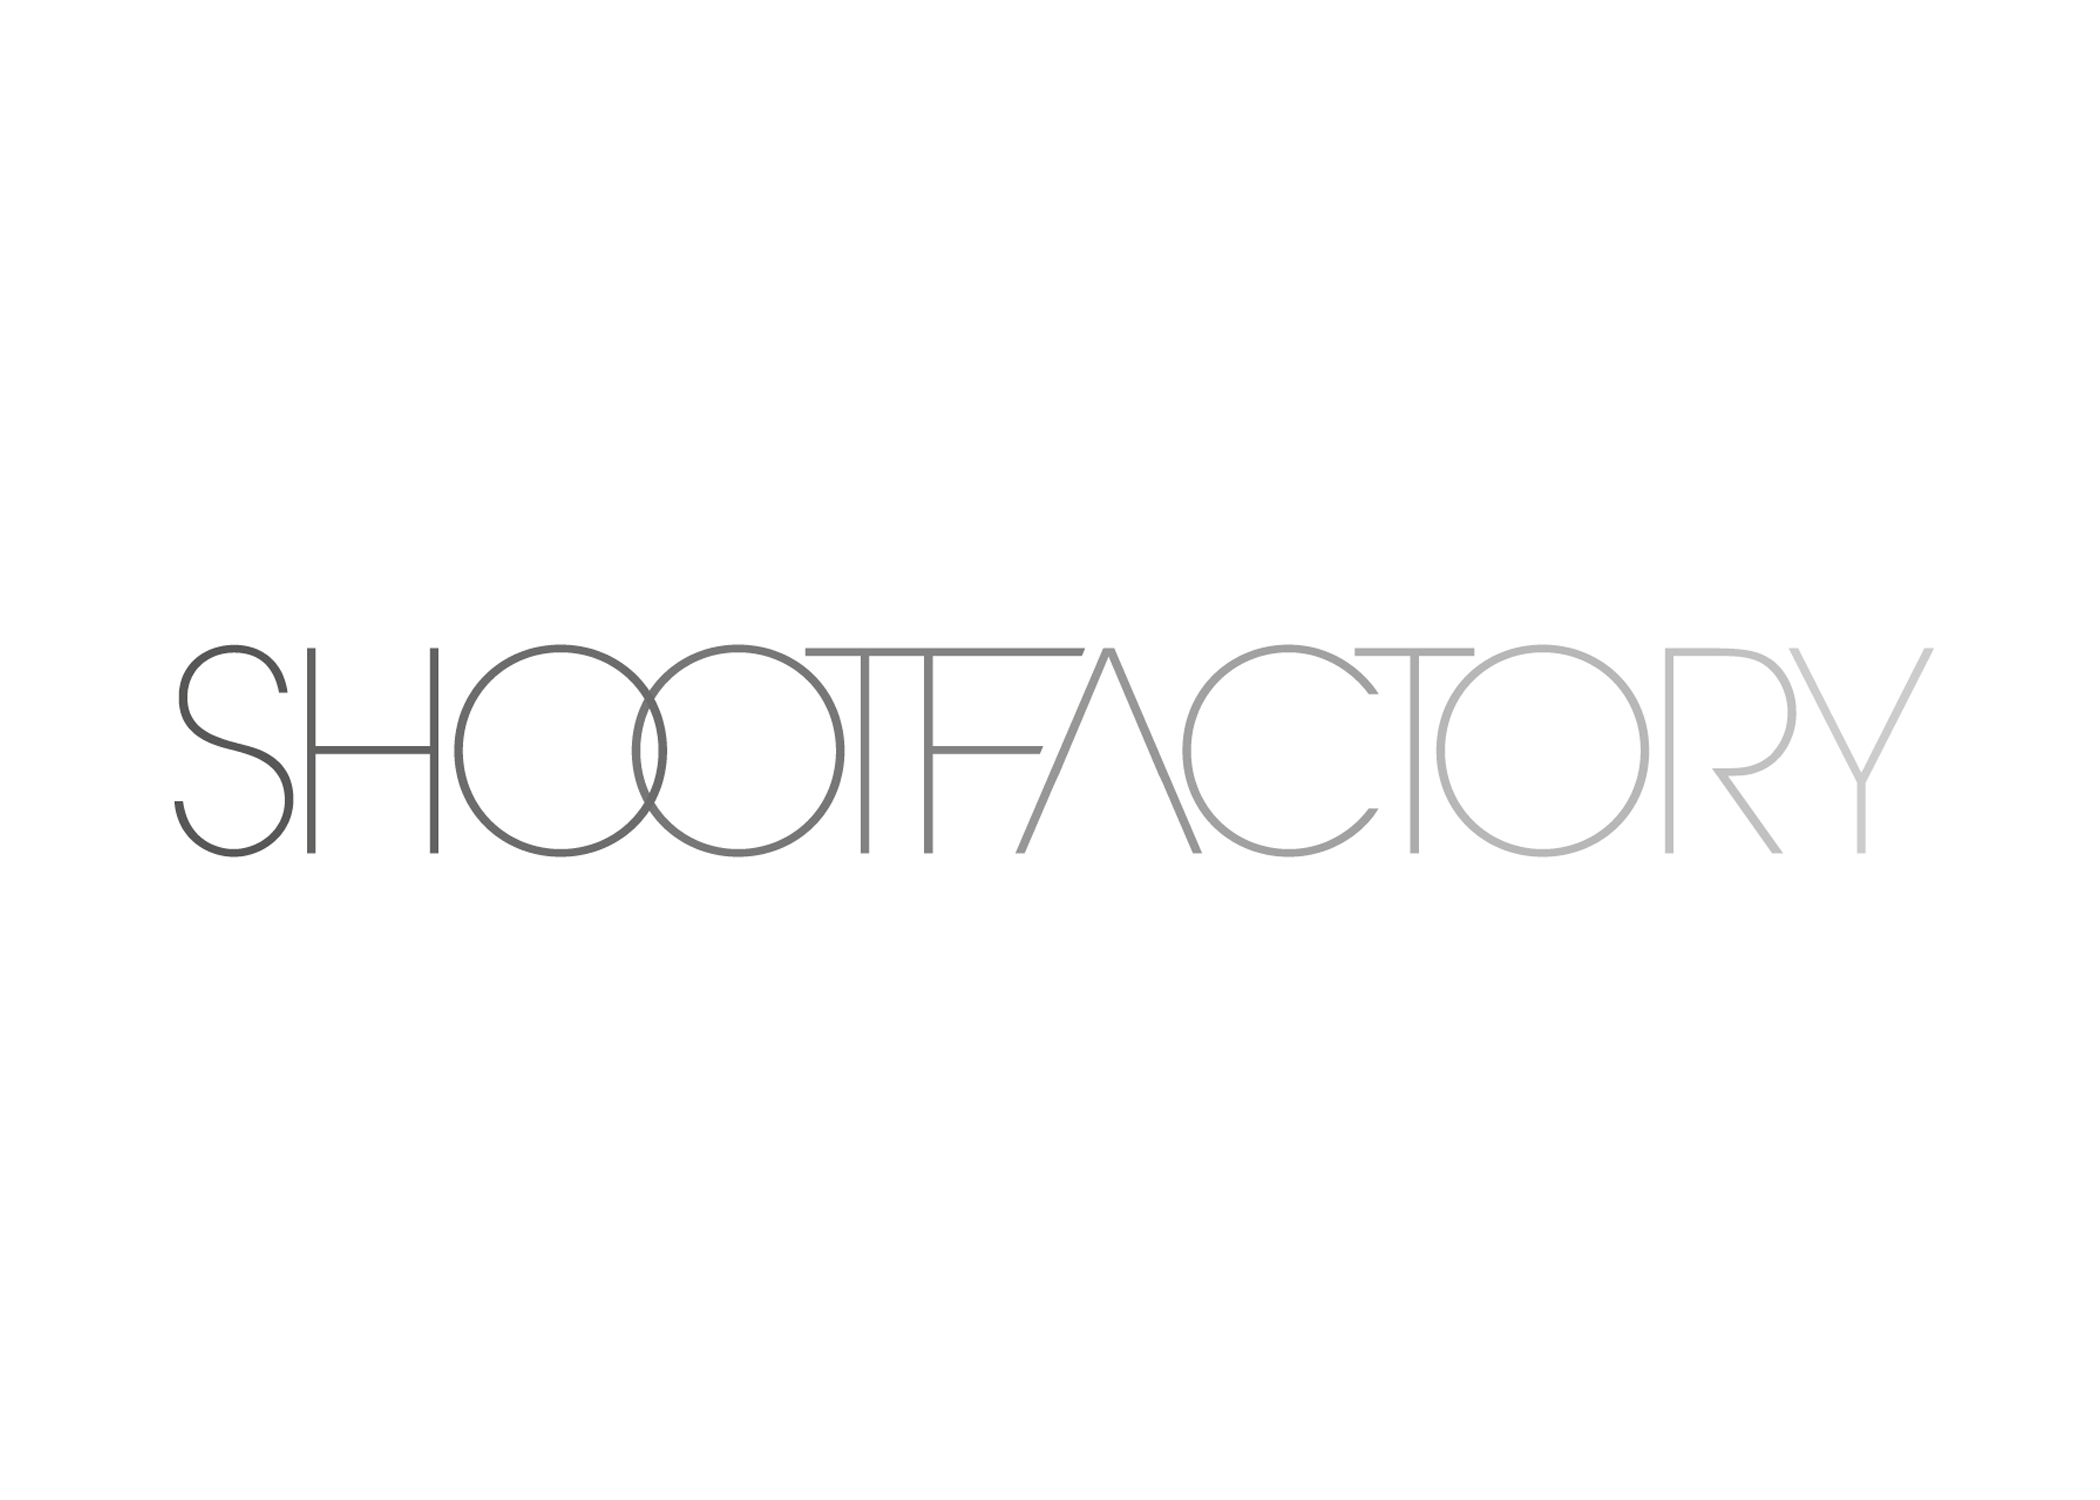 (c) Shootfactory.co.uk